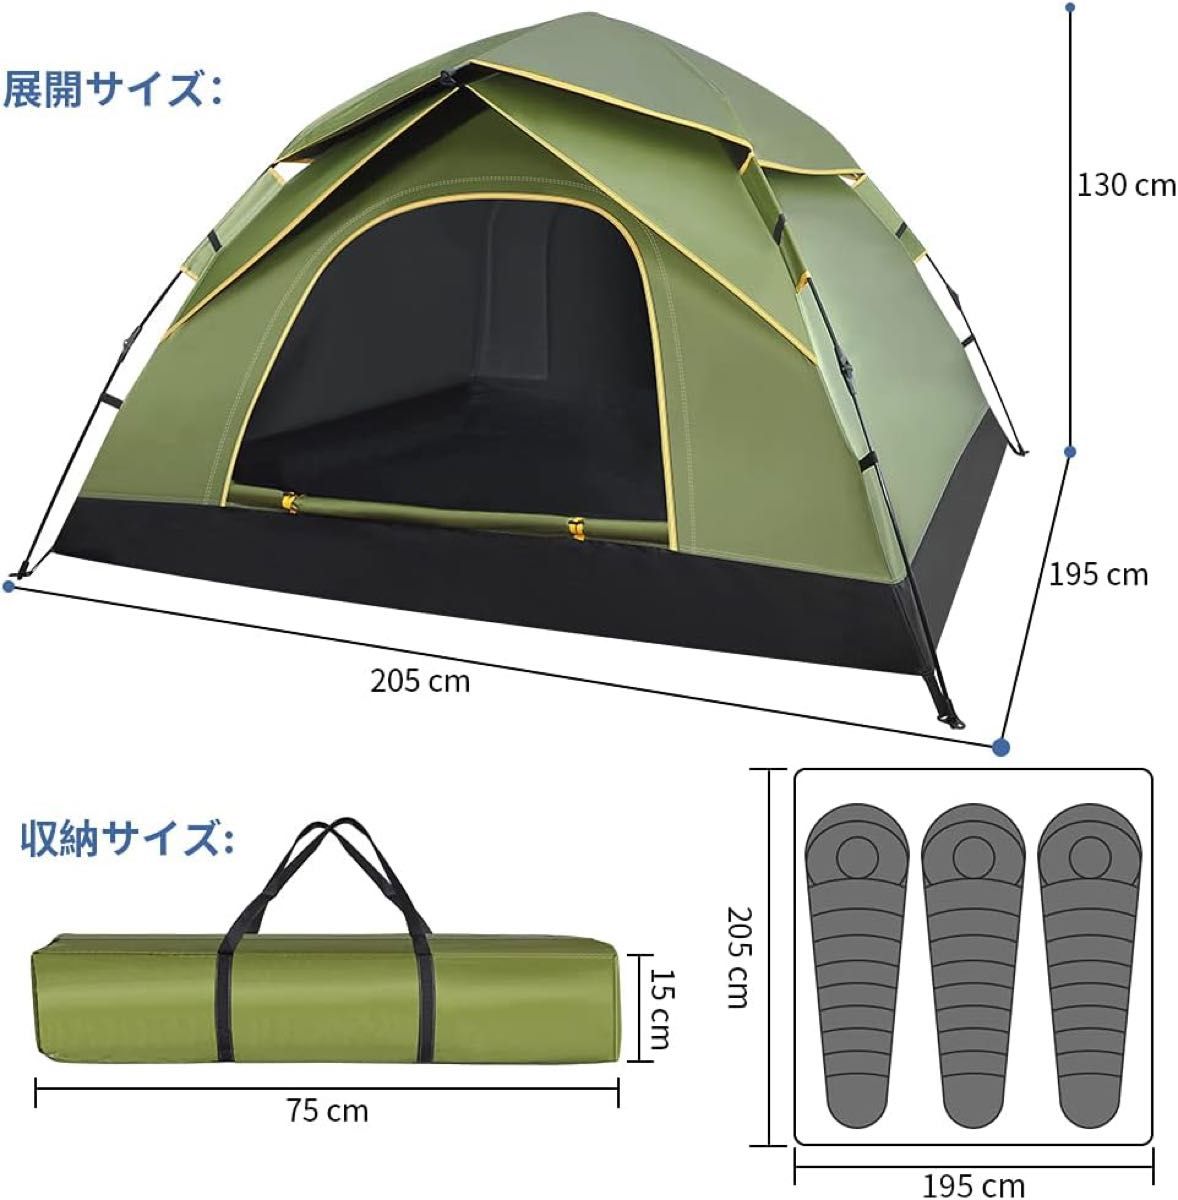 テント ワンタッチテント キャンプテント3~4人用 uvカット加工 防風防水 折りたたみ 超軽量 防災用 キャンプ用品 アウトドア